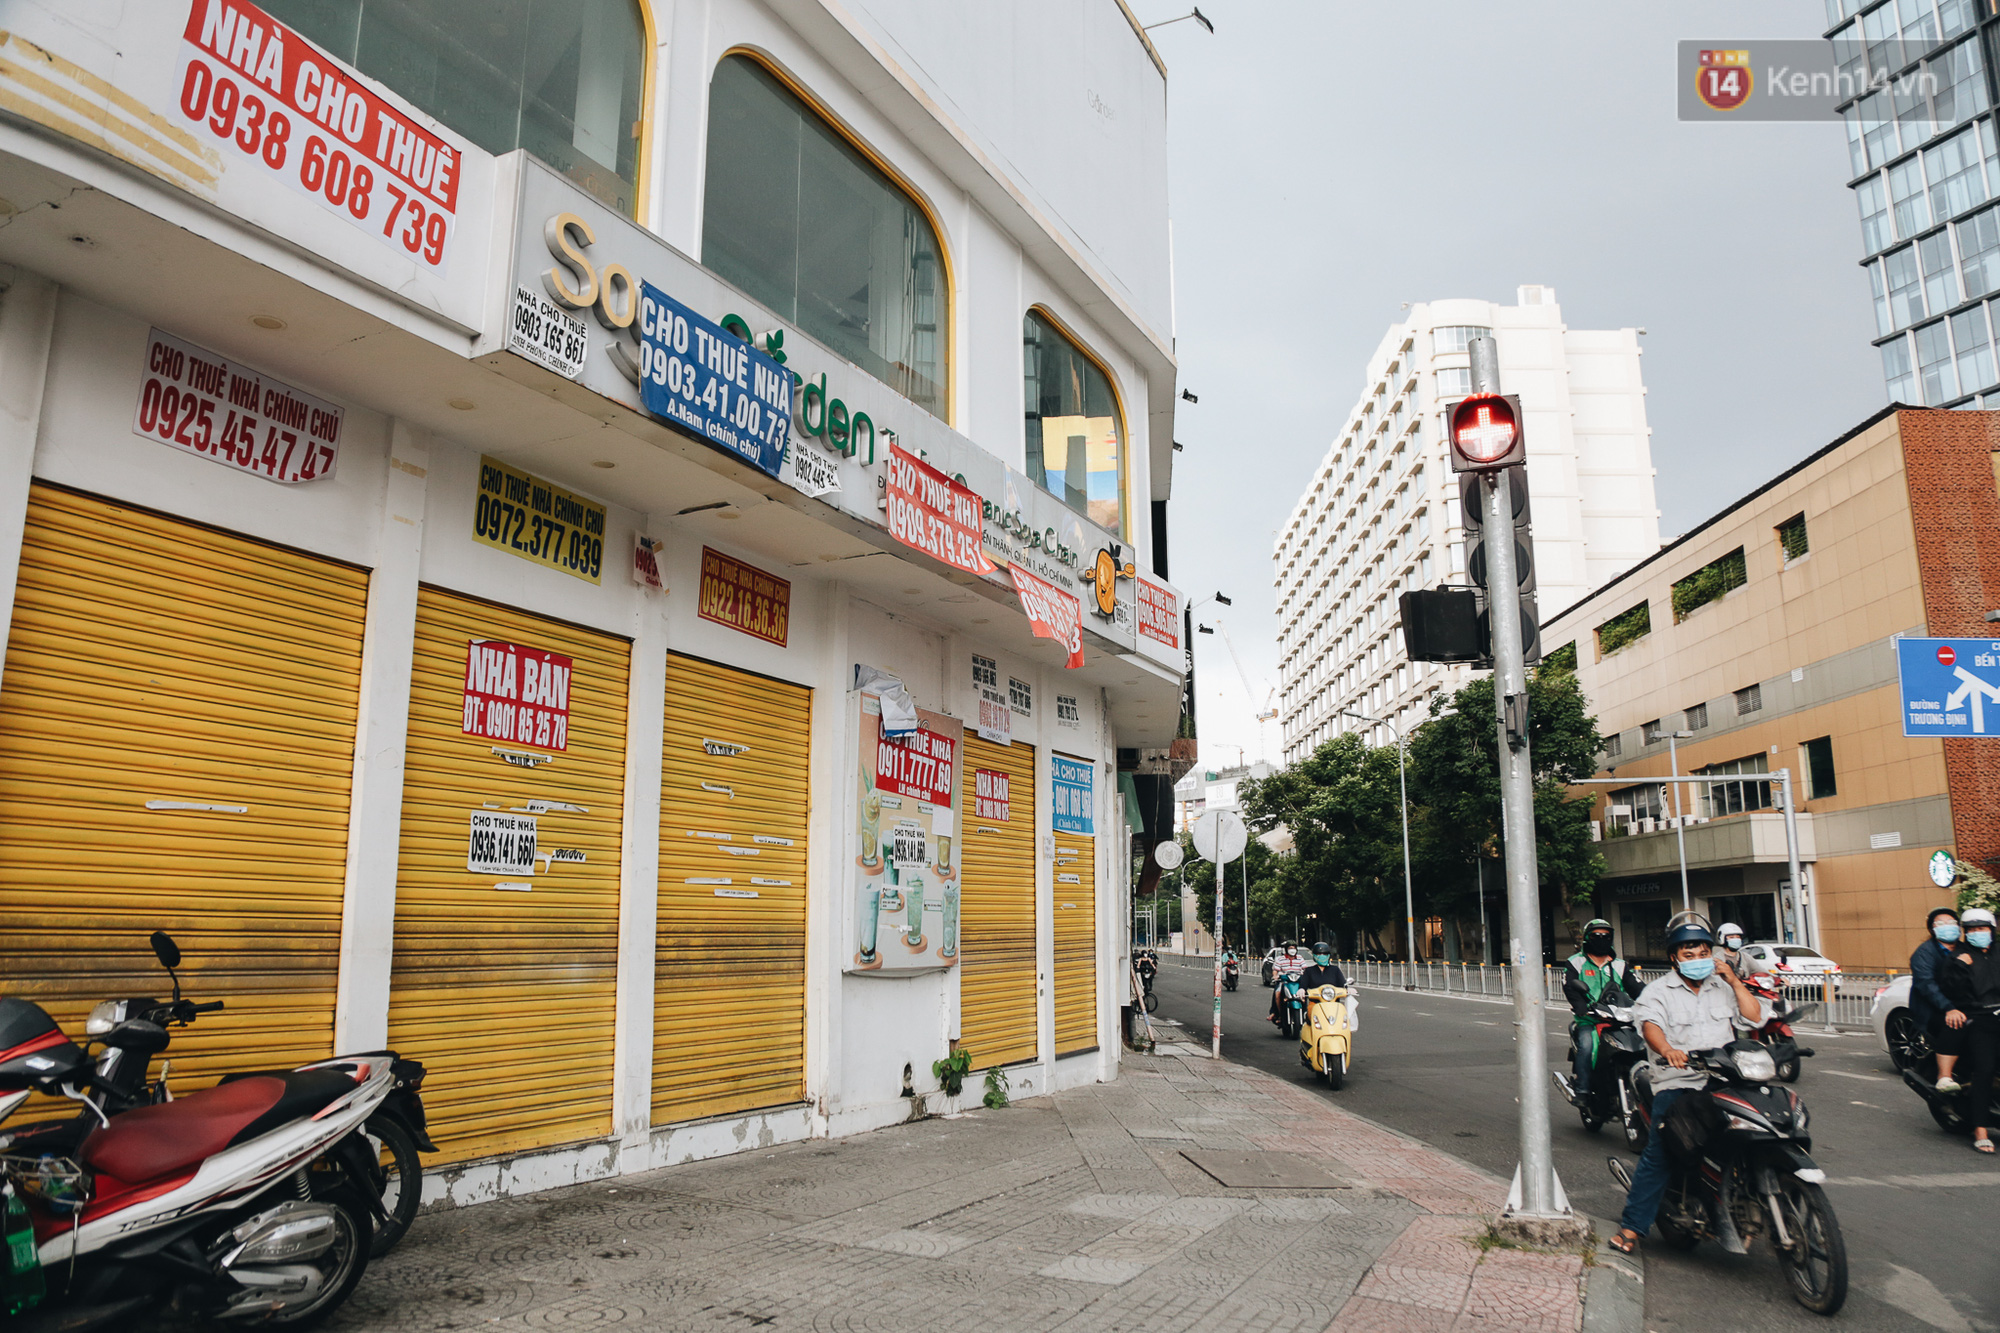 Mặt bằng nhà phố cho thuê ở Sài Gòn dần khởi sắc trở lại dịp cuối năm